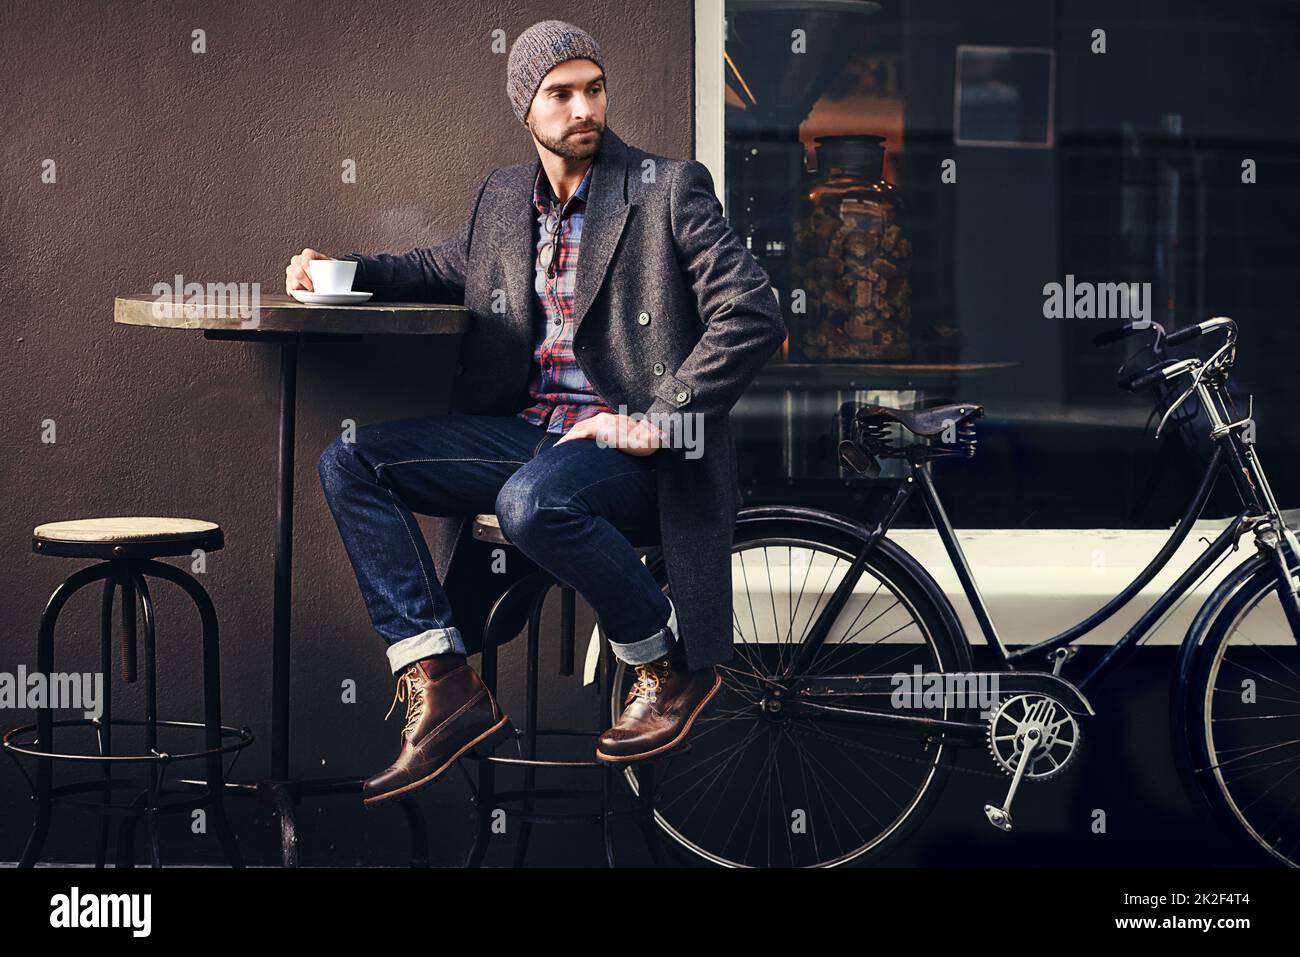 Kaffee ist immer eine gute Idee. Aufnahme eines hübschen jungen Mannes im Winter, der ein Getränk in einem Straßencafé hat. Stockfoto